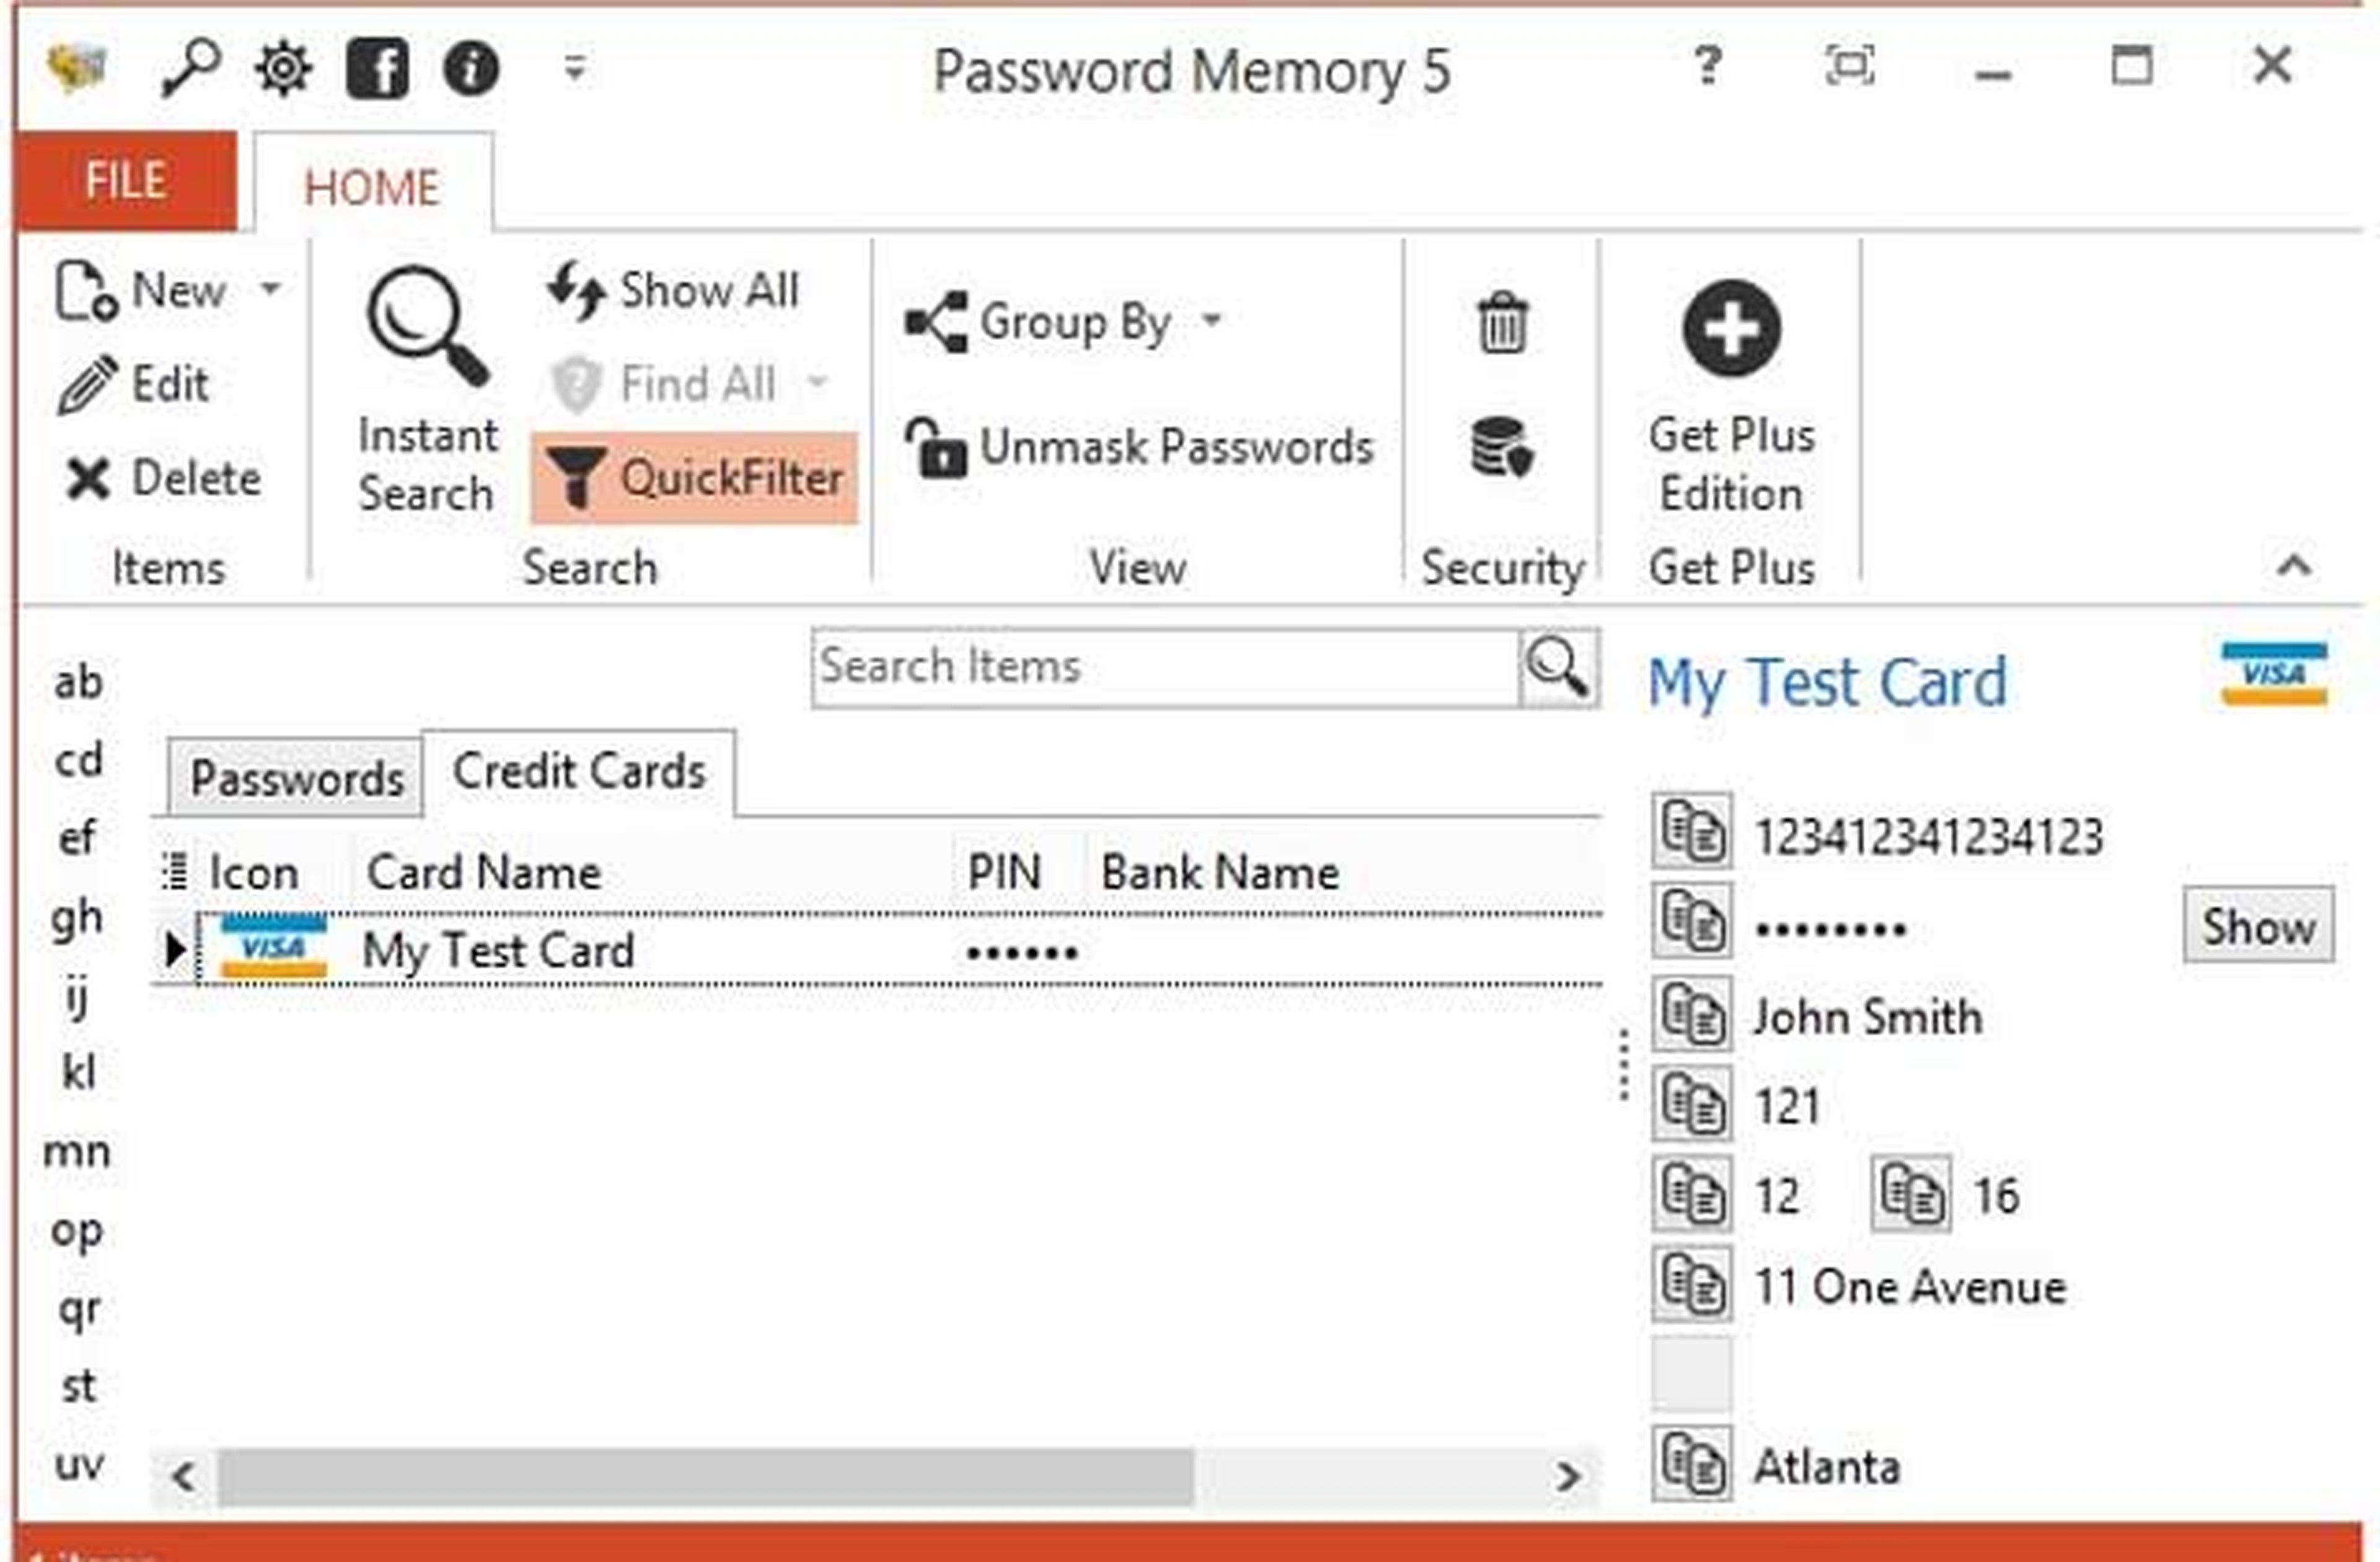 Detalle de configuración de una tarjeta de crédito en Password Memory 5